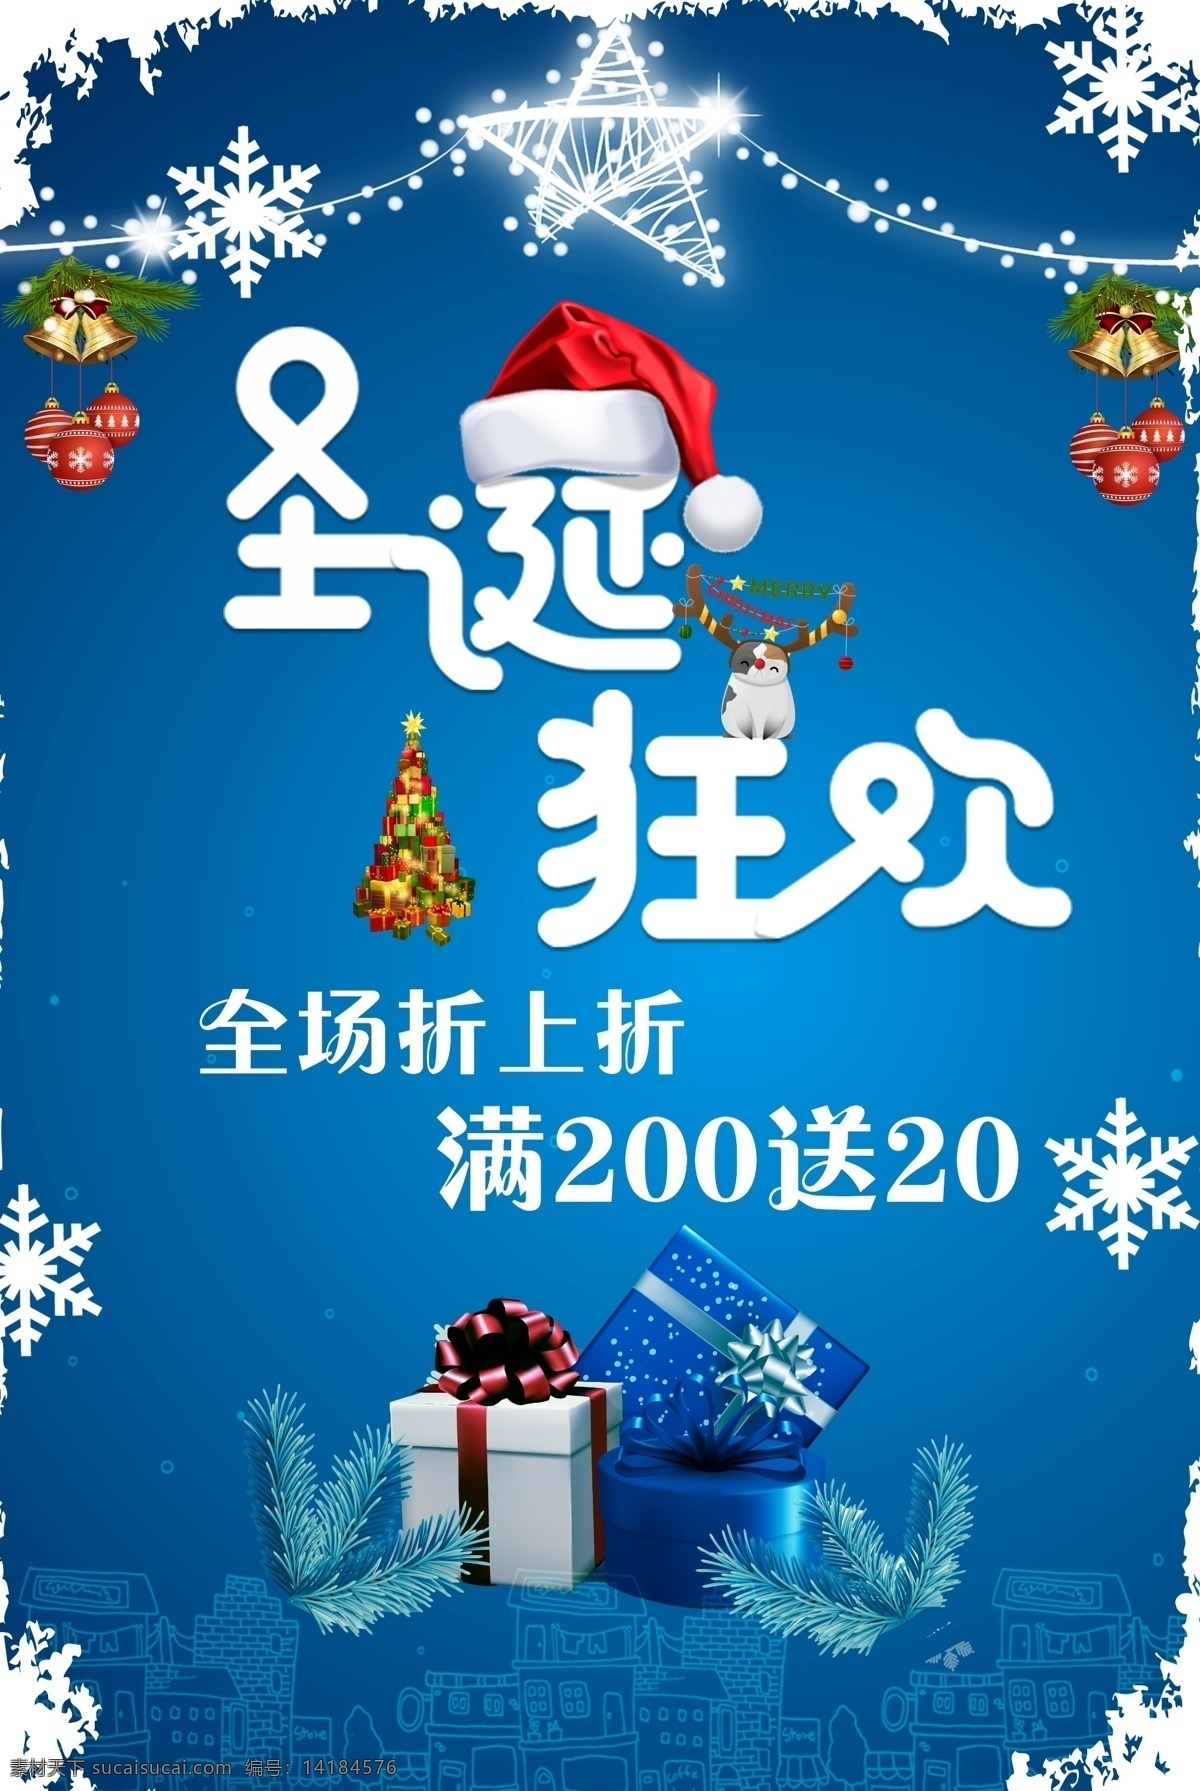 圣诞 狂欢 折 上 促销 宣传海报 大气 冬季 海报 蓝色 全场折上折 商场 圣诞节 宣传